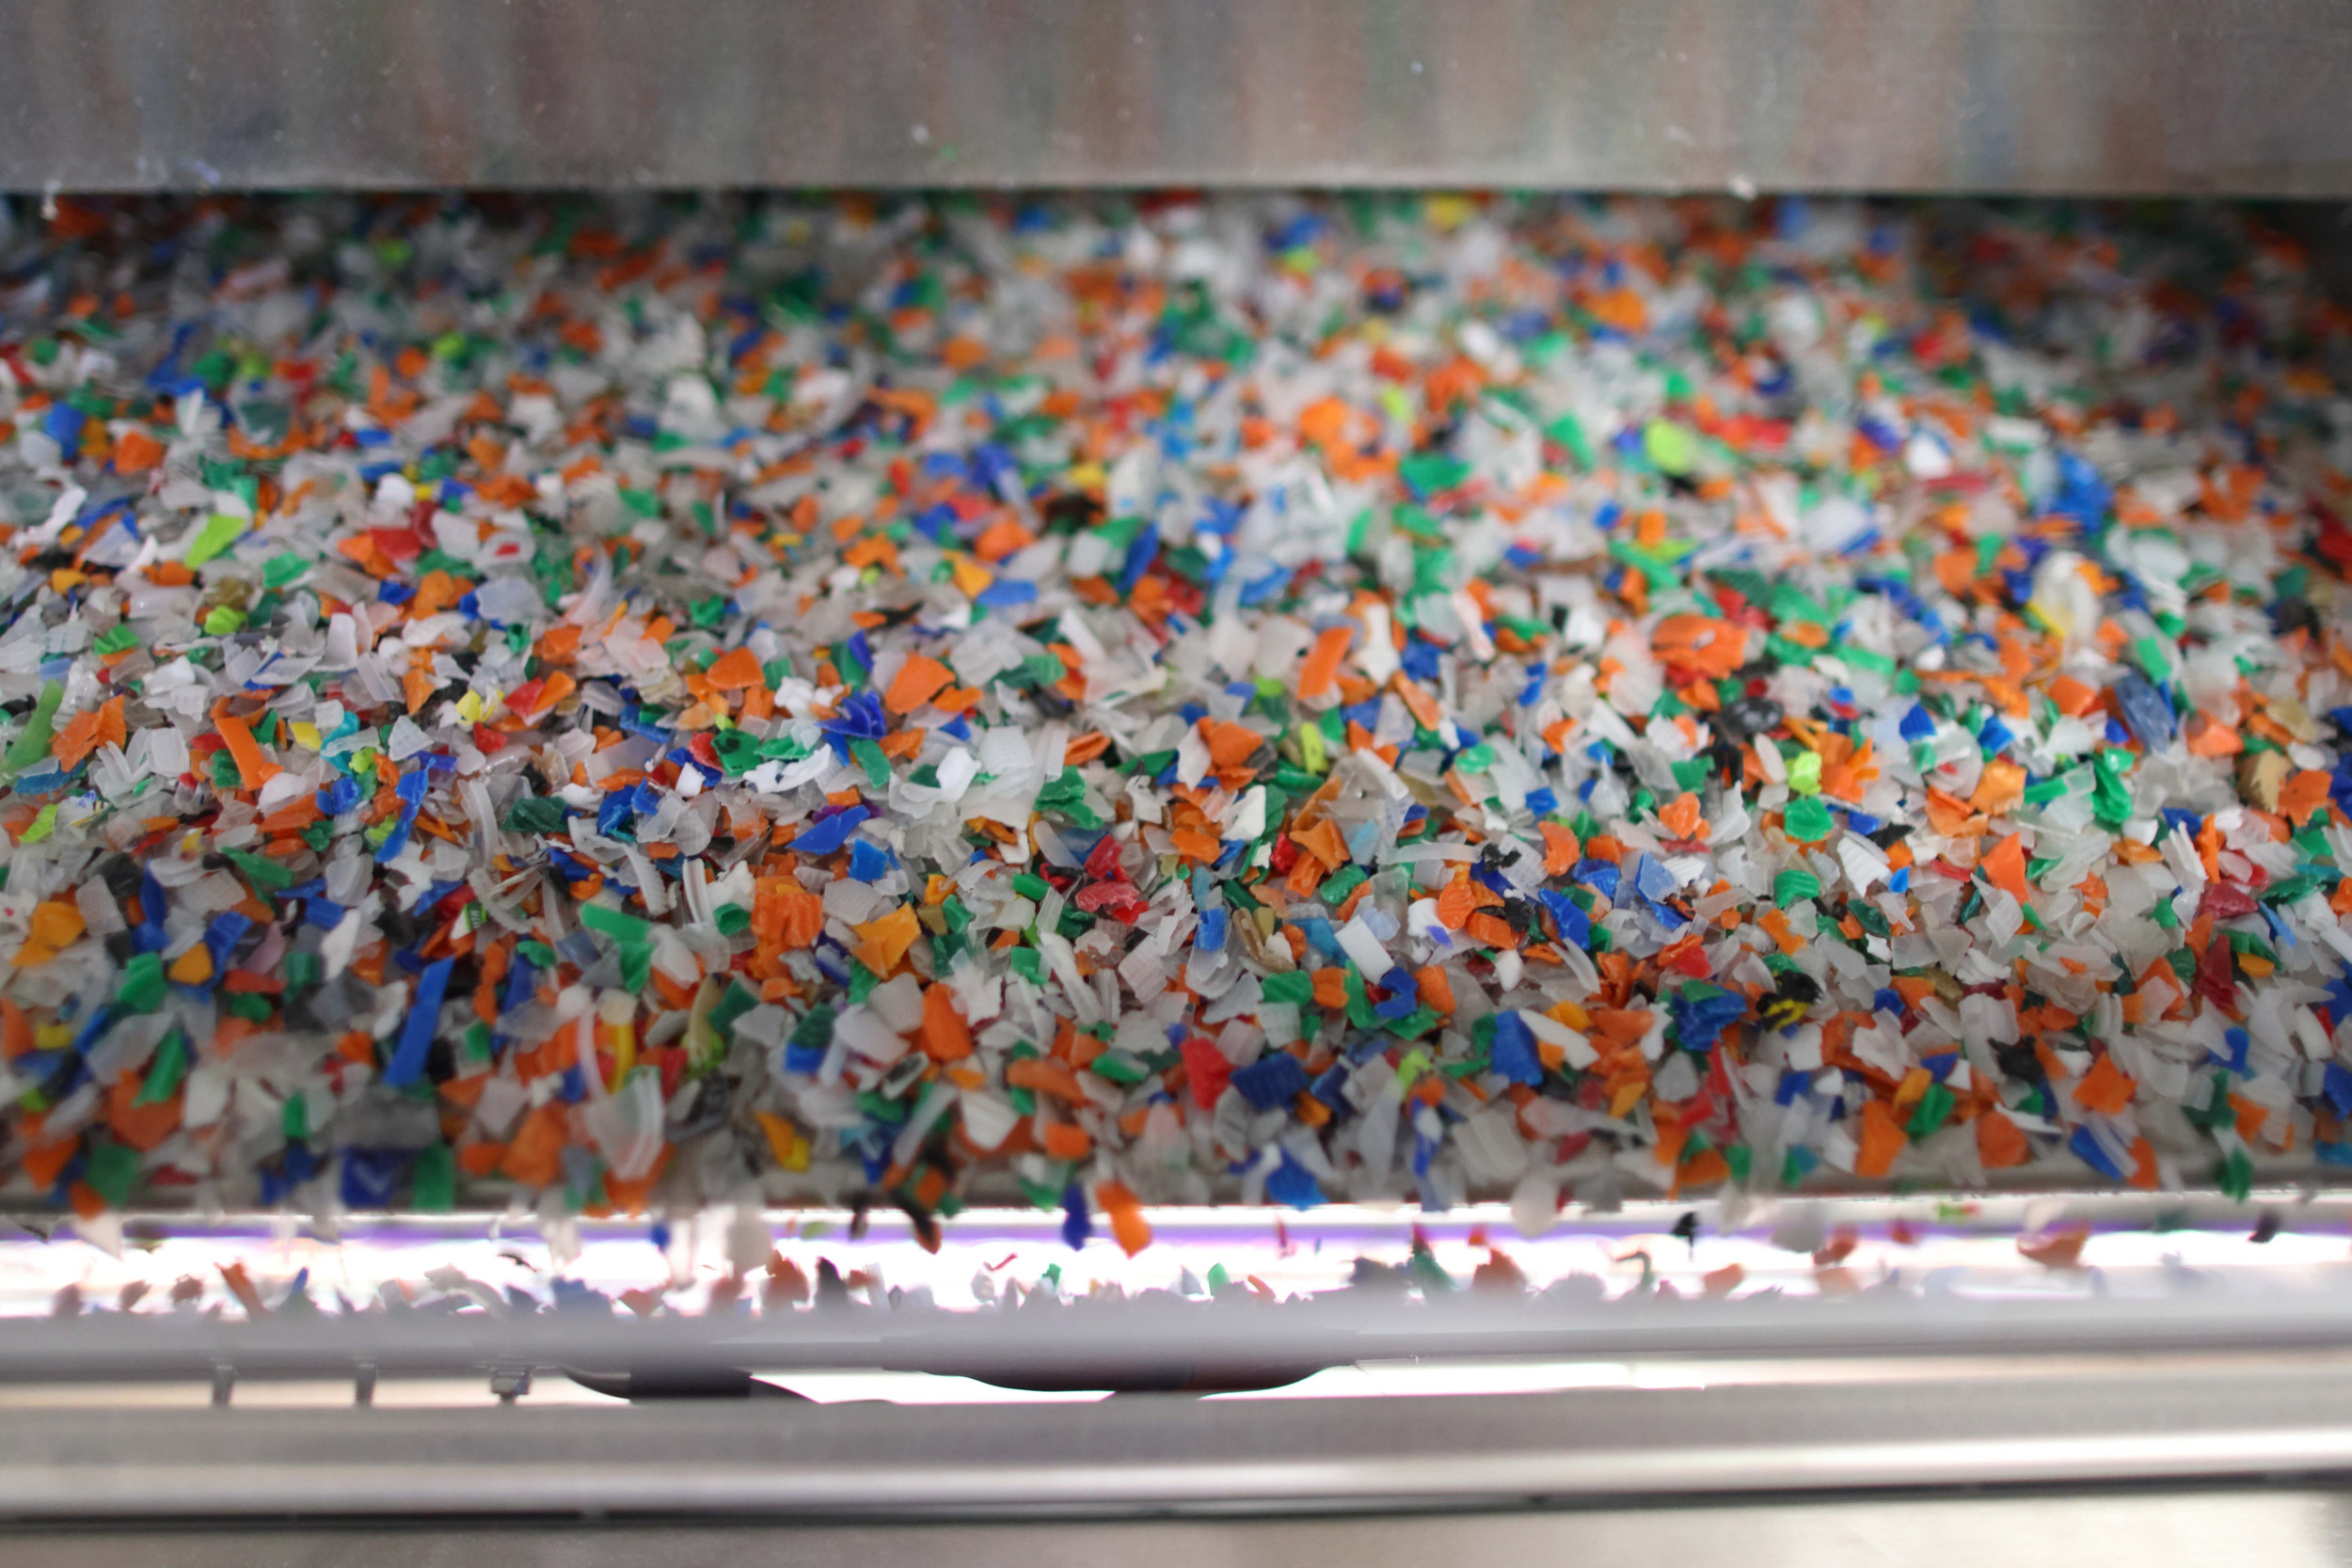 Das Innosort Flake System von Tomra kann die Kunststoffflakes nach Material und Farbe sortieren.